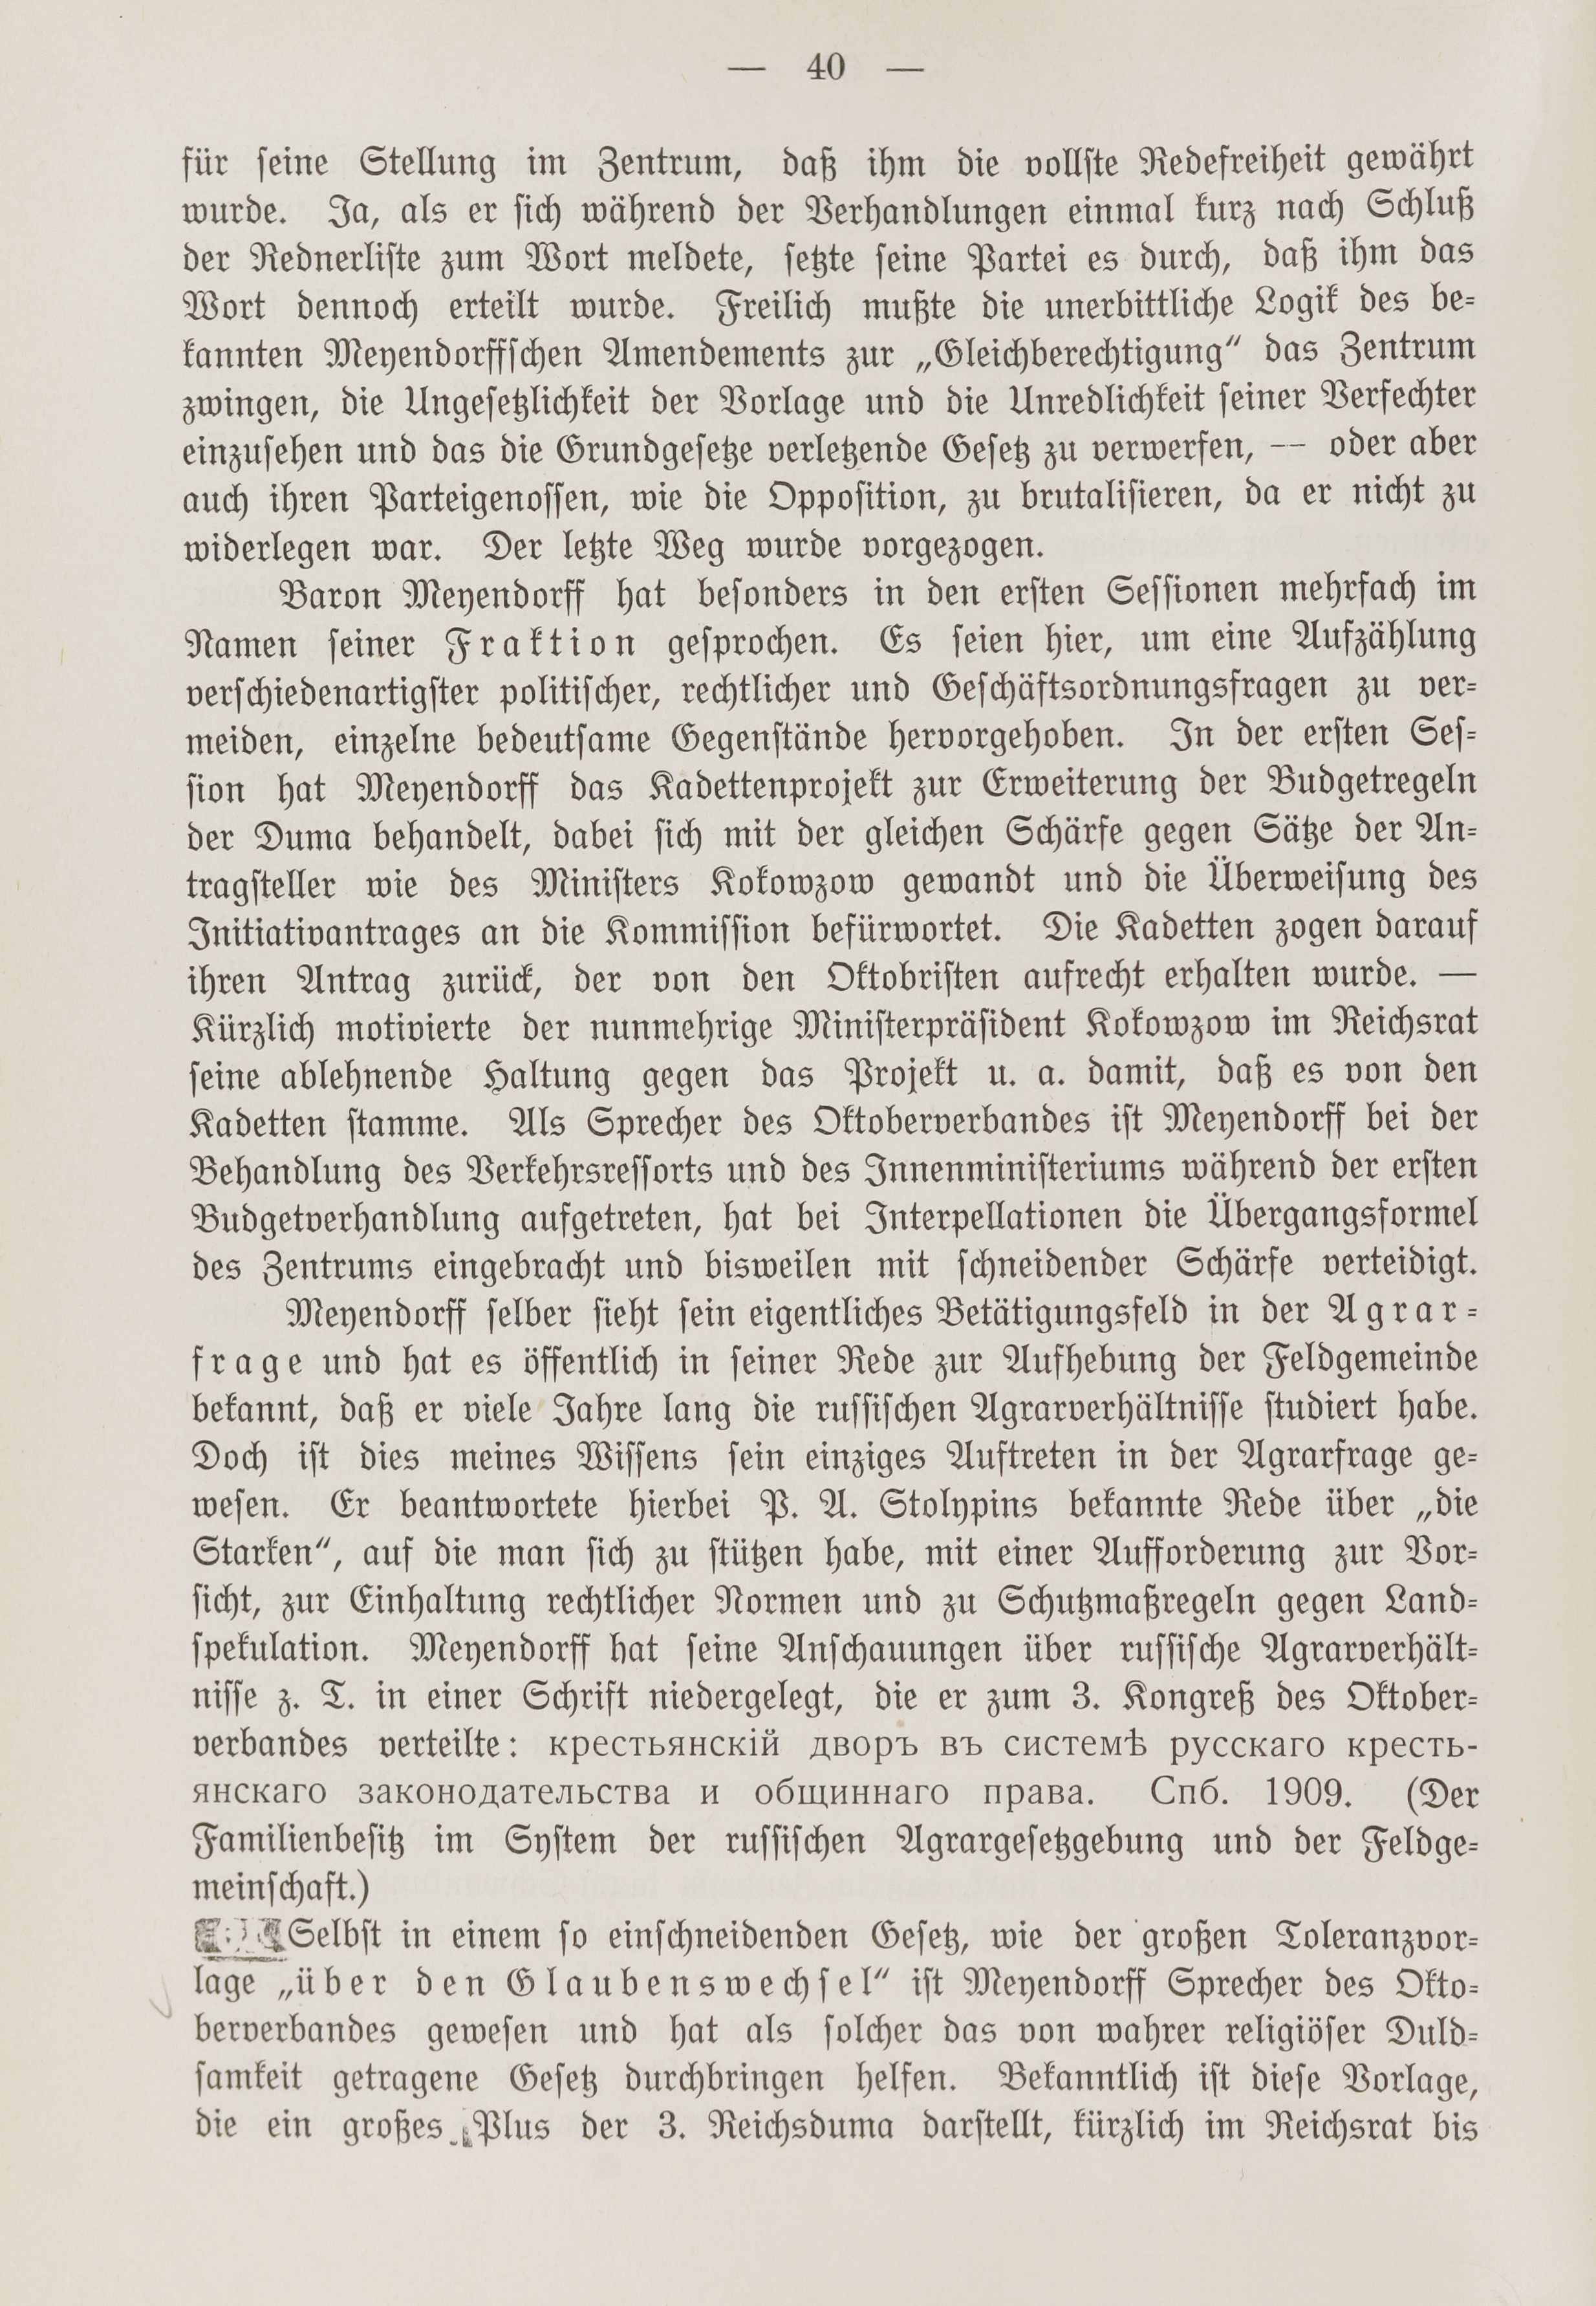 Deutsche Monatsschrift für Russland [1] (1912) | 47. (40) Põhitekst